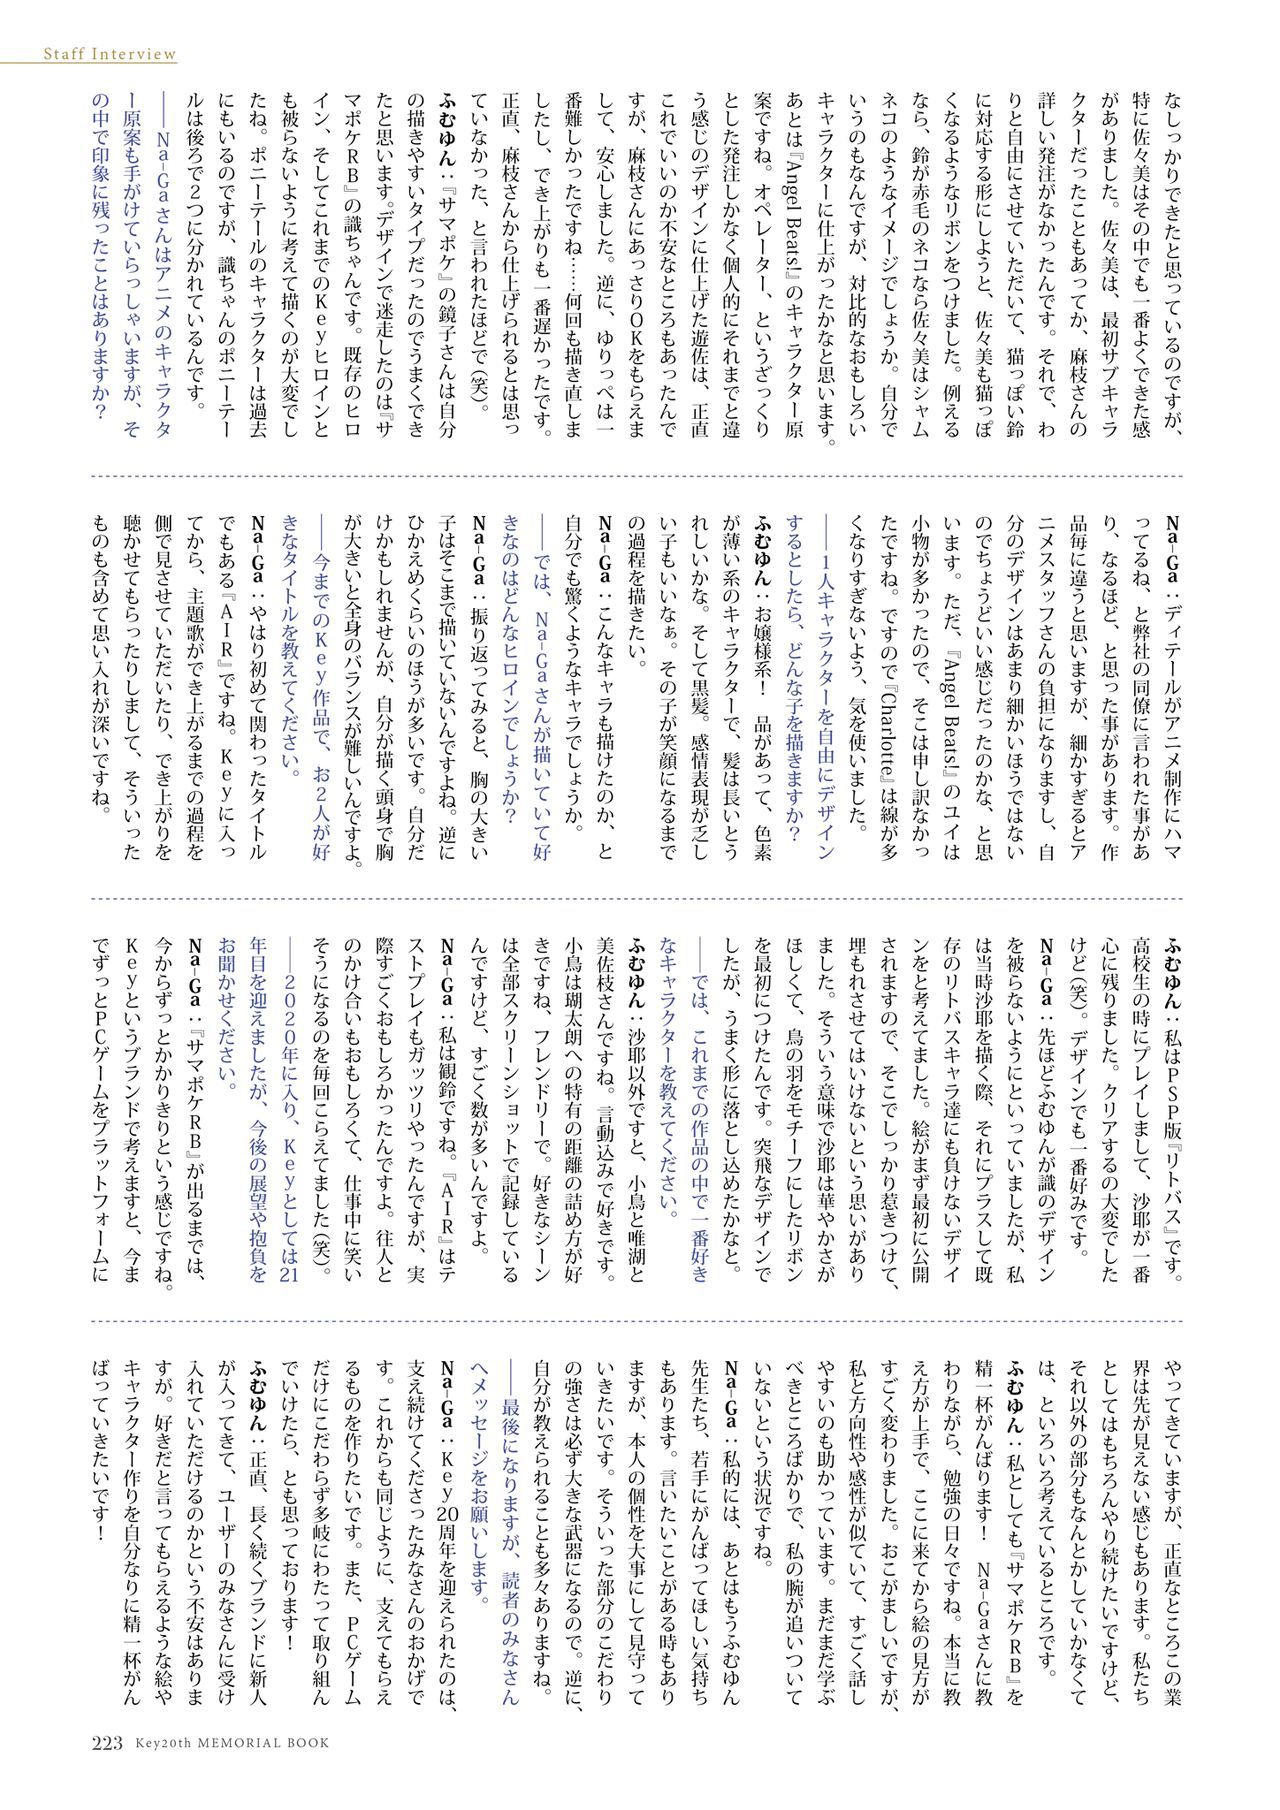 [Key] Key20th MEMORIAL BOOK [Key] Key20th MEMORIAL BOOK 電子書籍 198